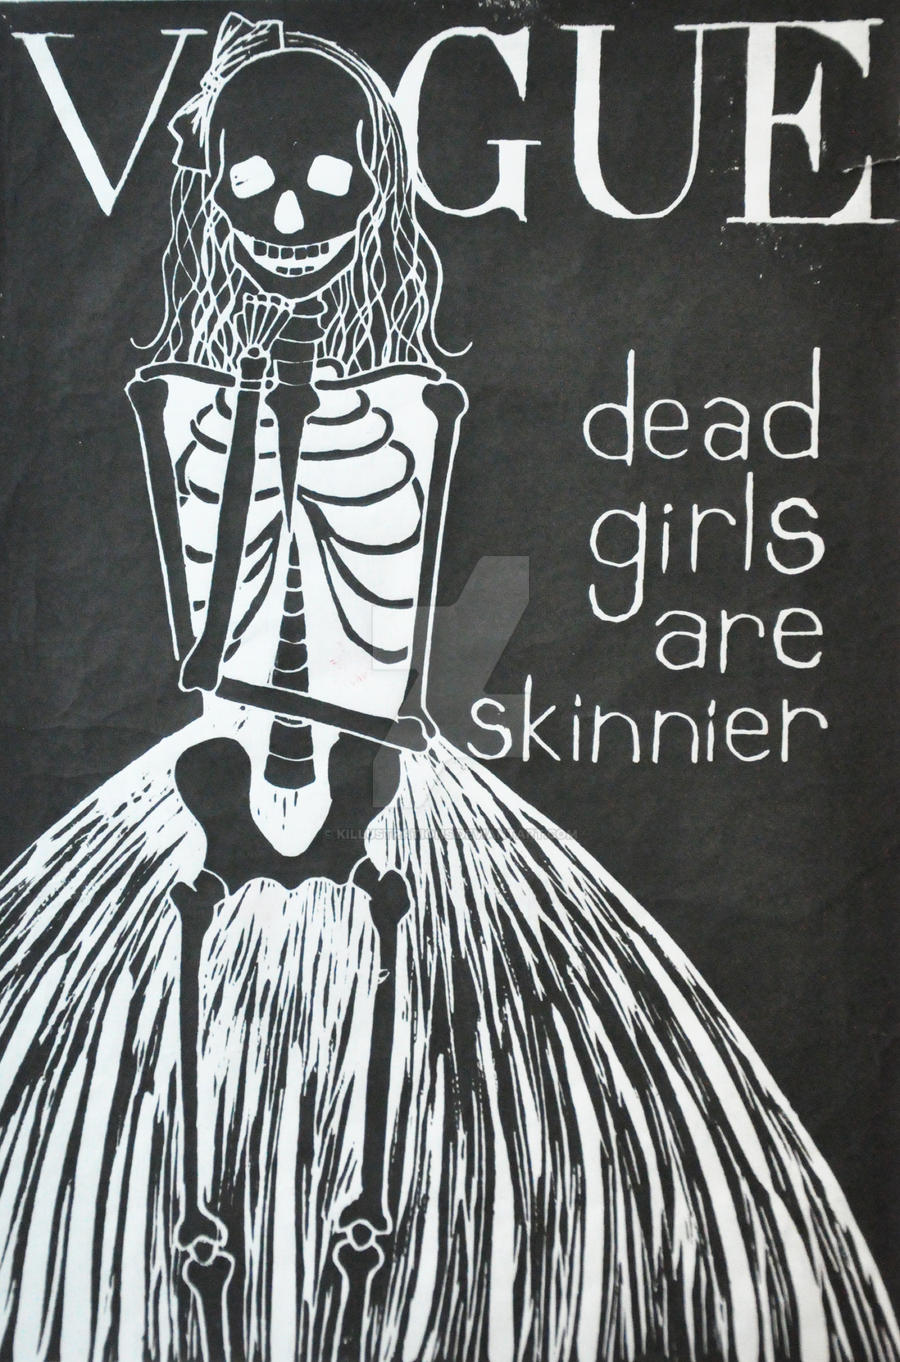 Dead Girls are Skinnier by killustrations on DeviantArt